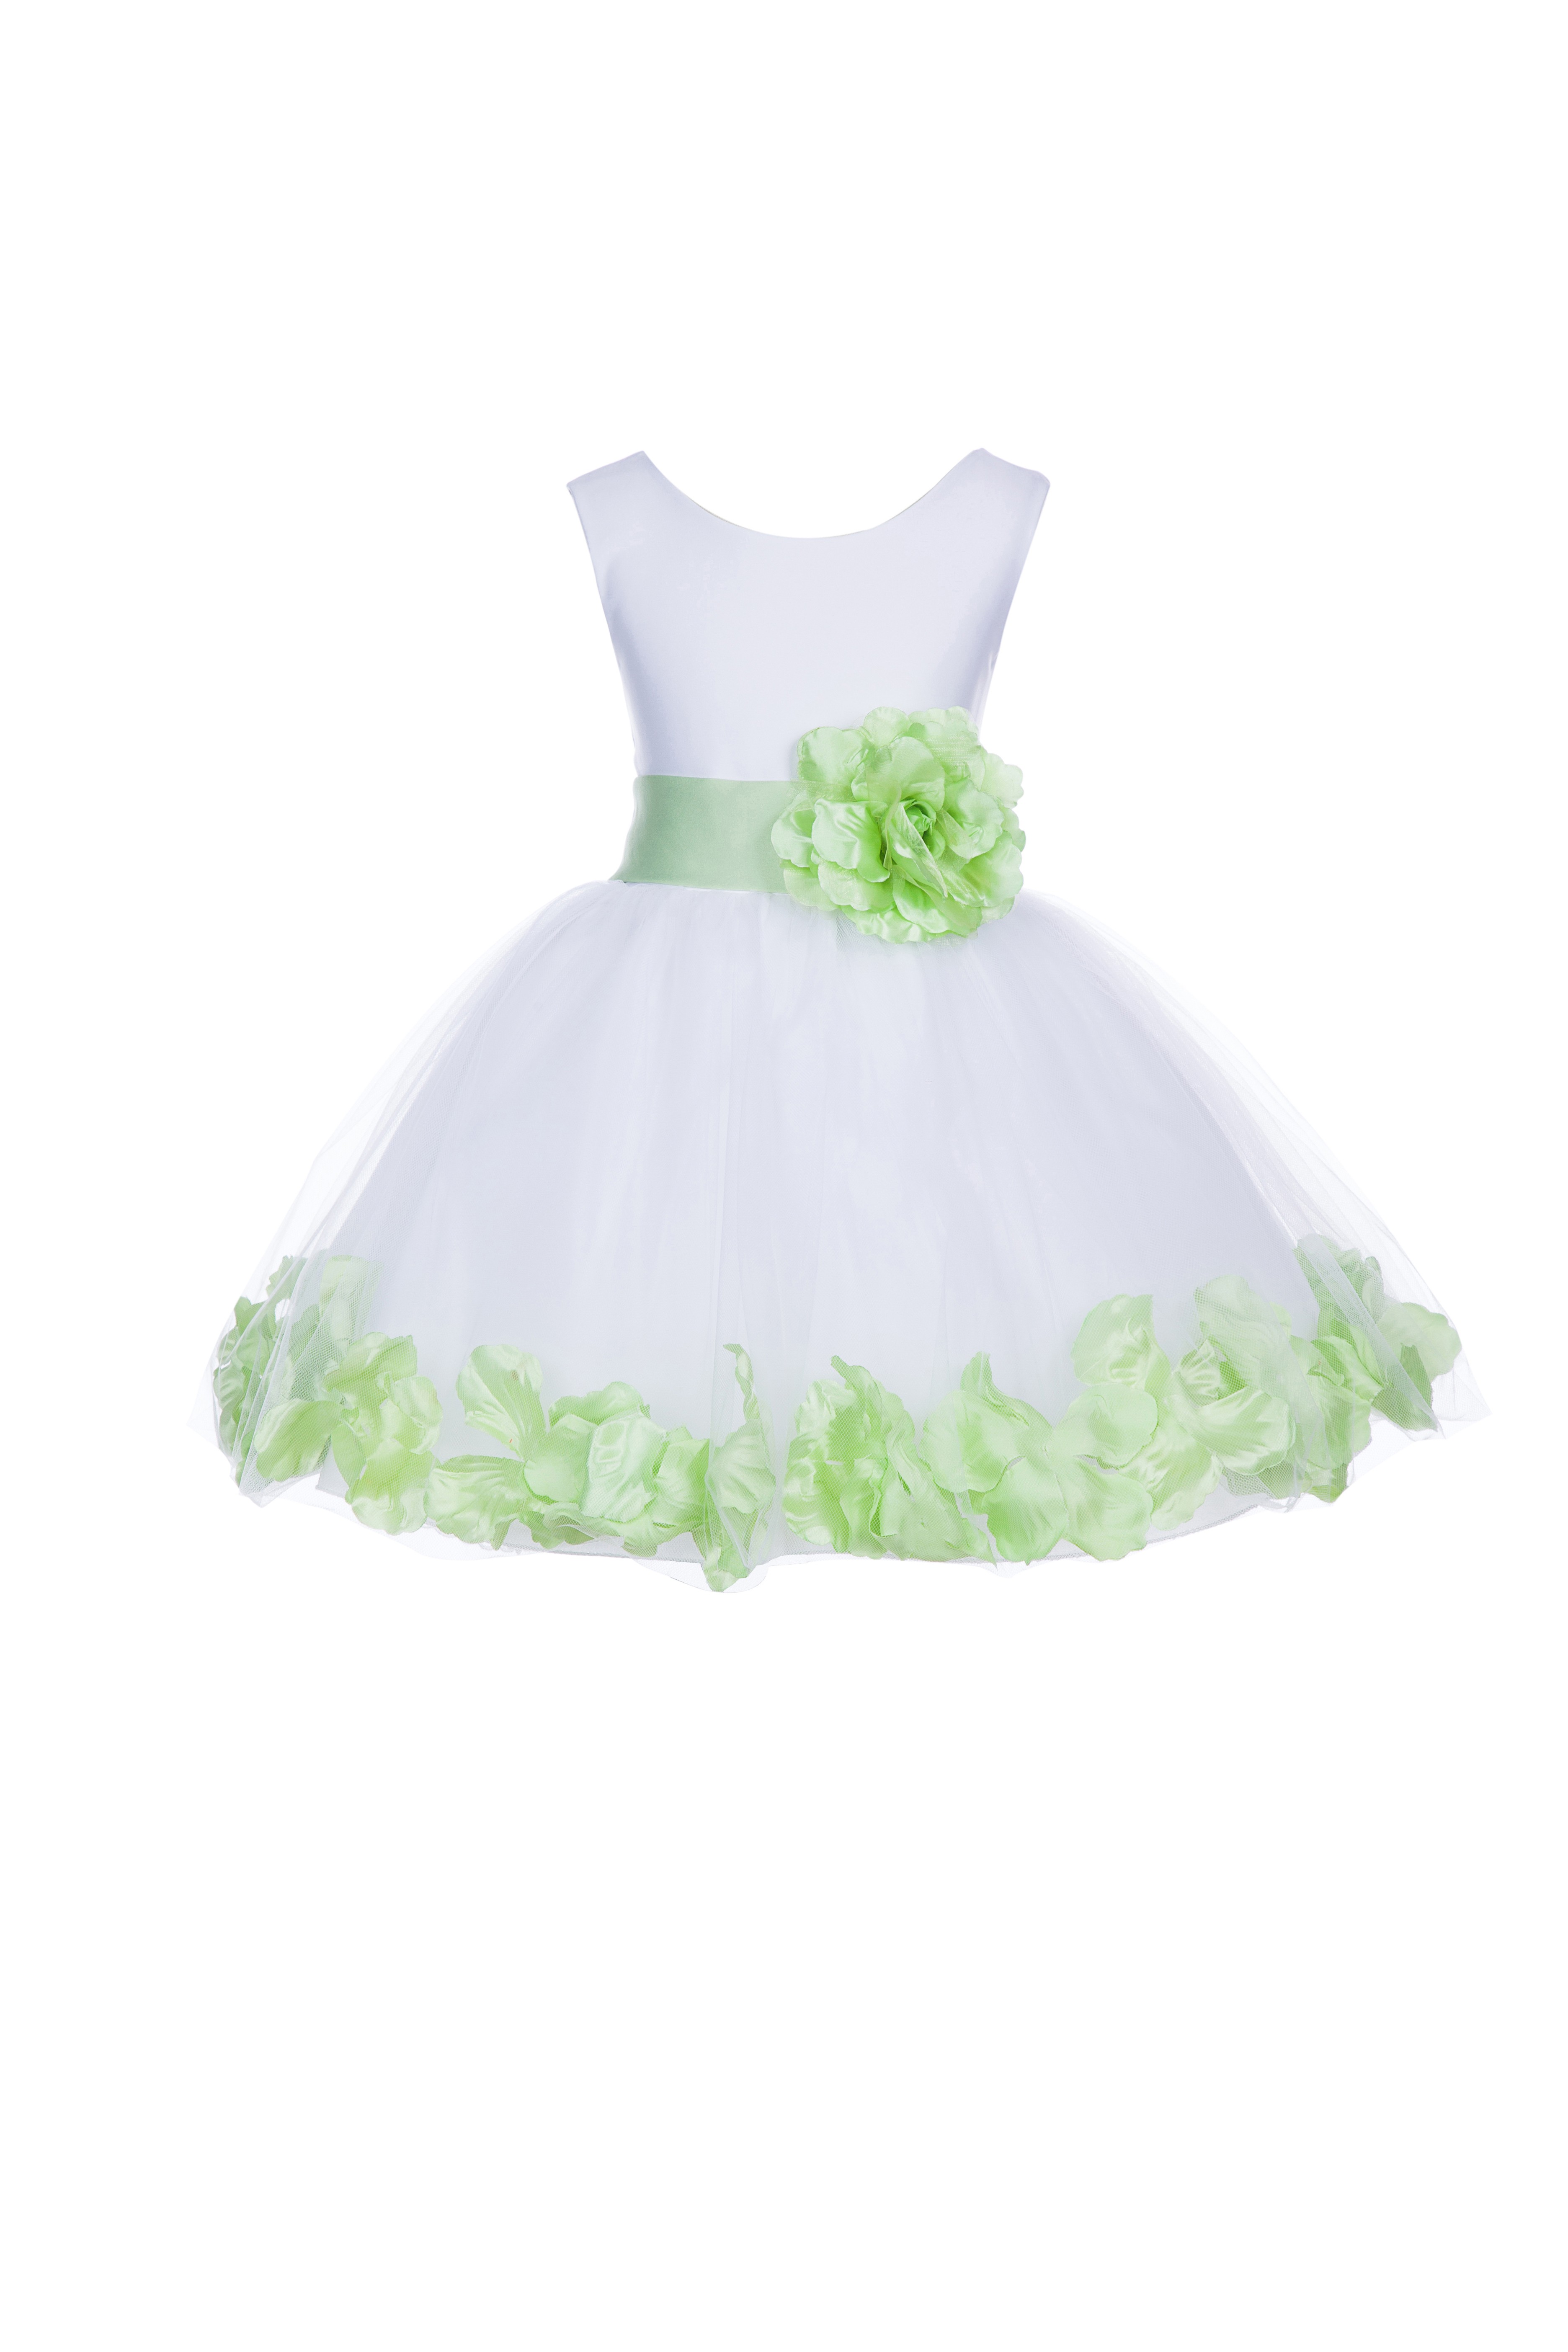 White/Apple Green Rose Petals Tulle Flower Girl Dress Wedding 305T